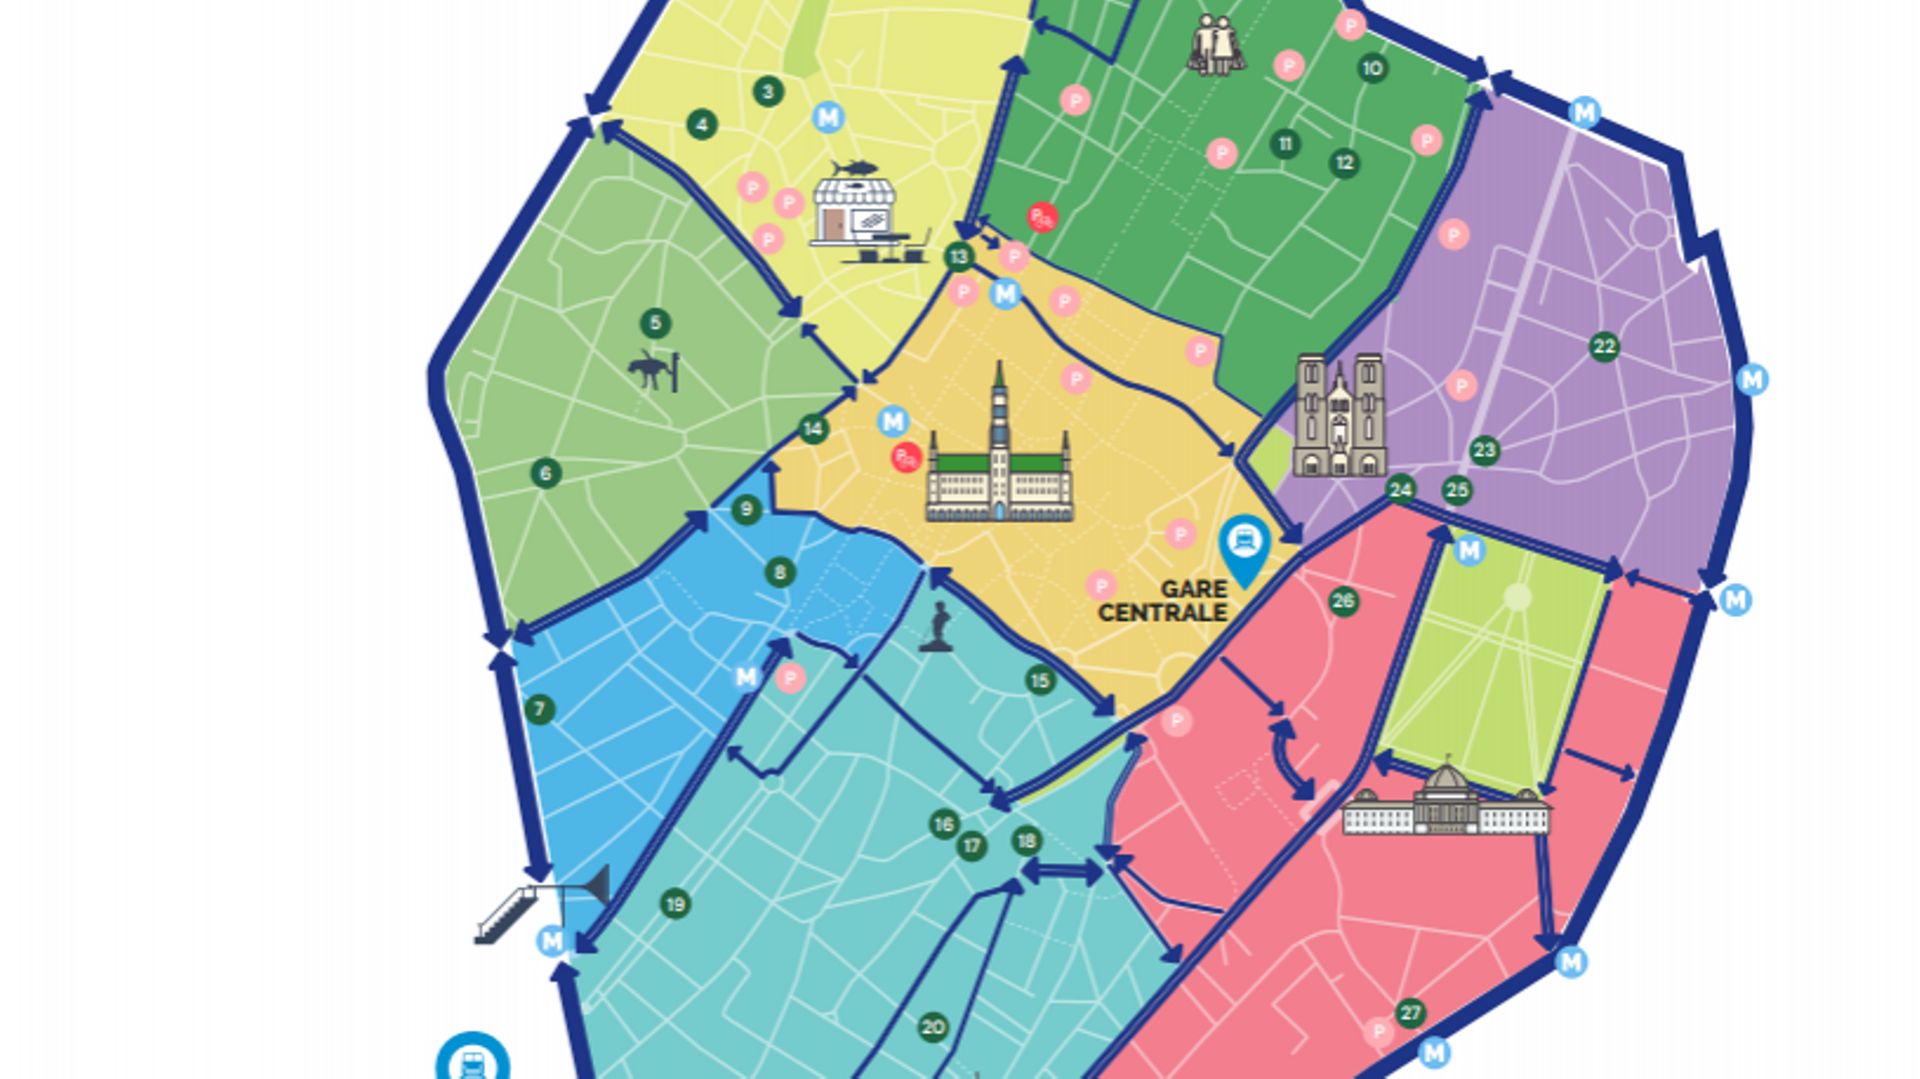 Le nouveau plan de circulation du centre-ville de Bruxelles